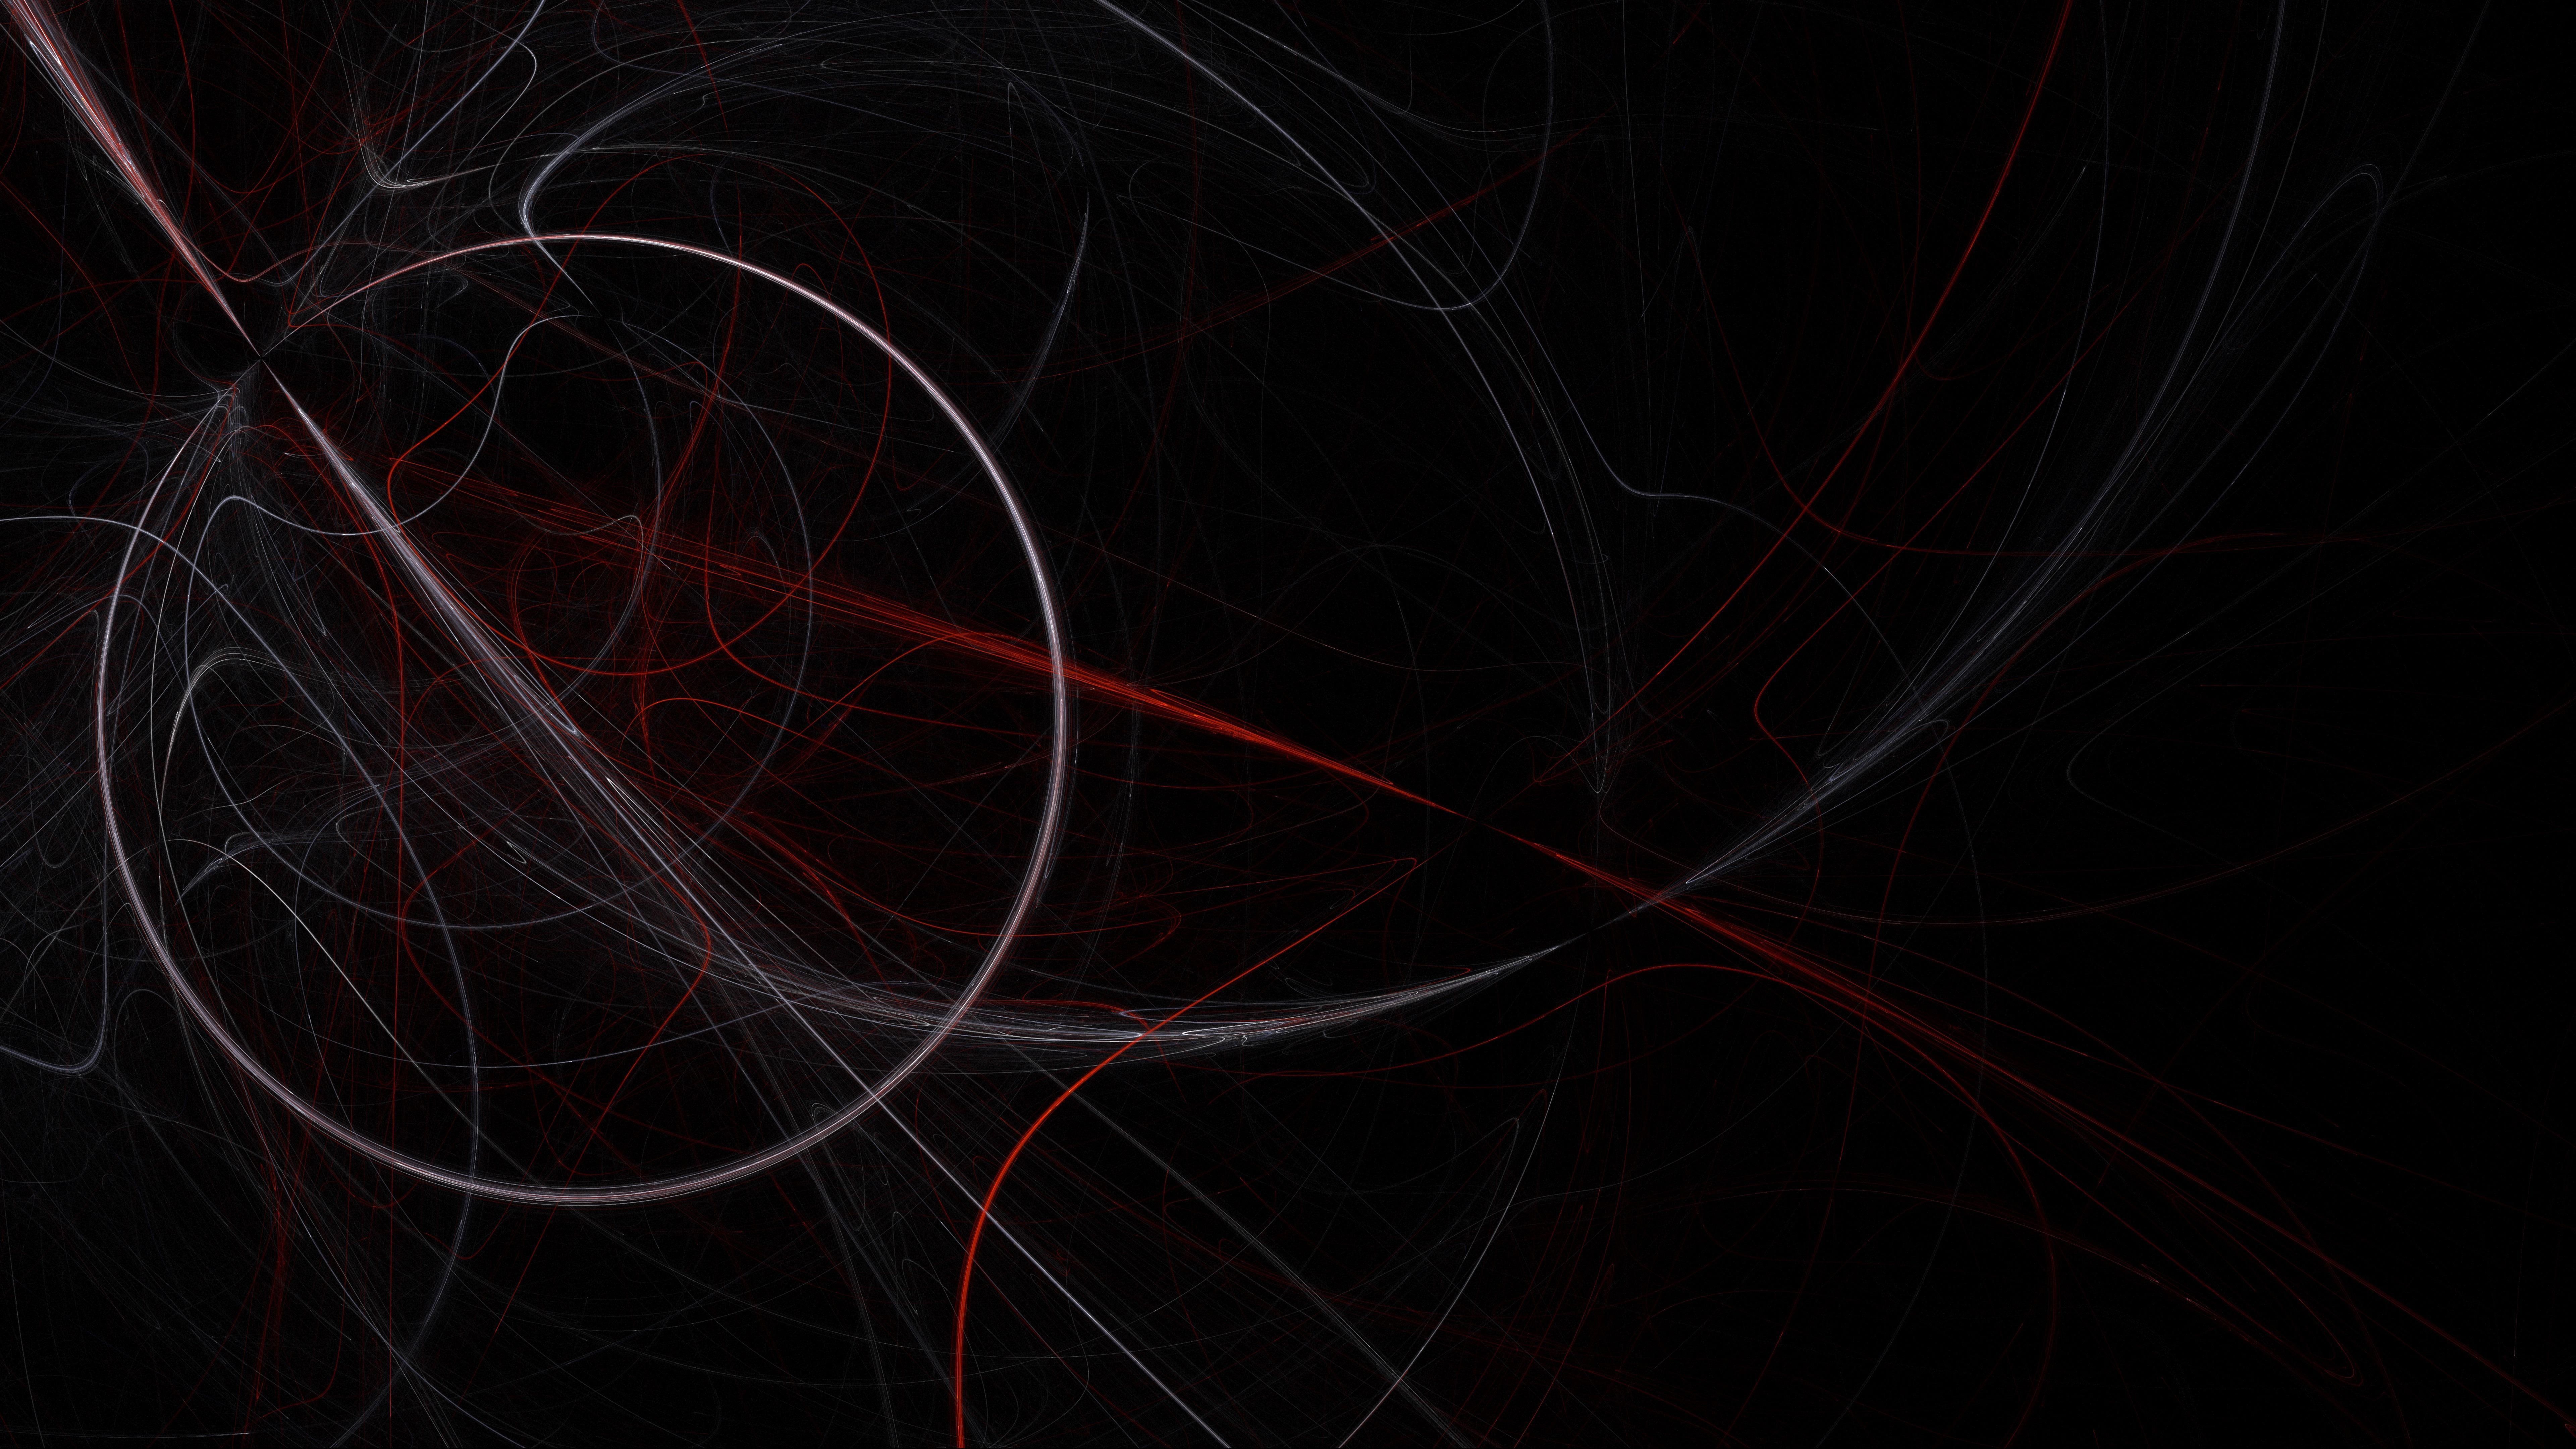 8k uhd #circle #black #red #darkness #light #night #dark K #wallpaper #hdwallpaper #desktop. HD wallpaper, Wallpaper, Action poses